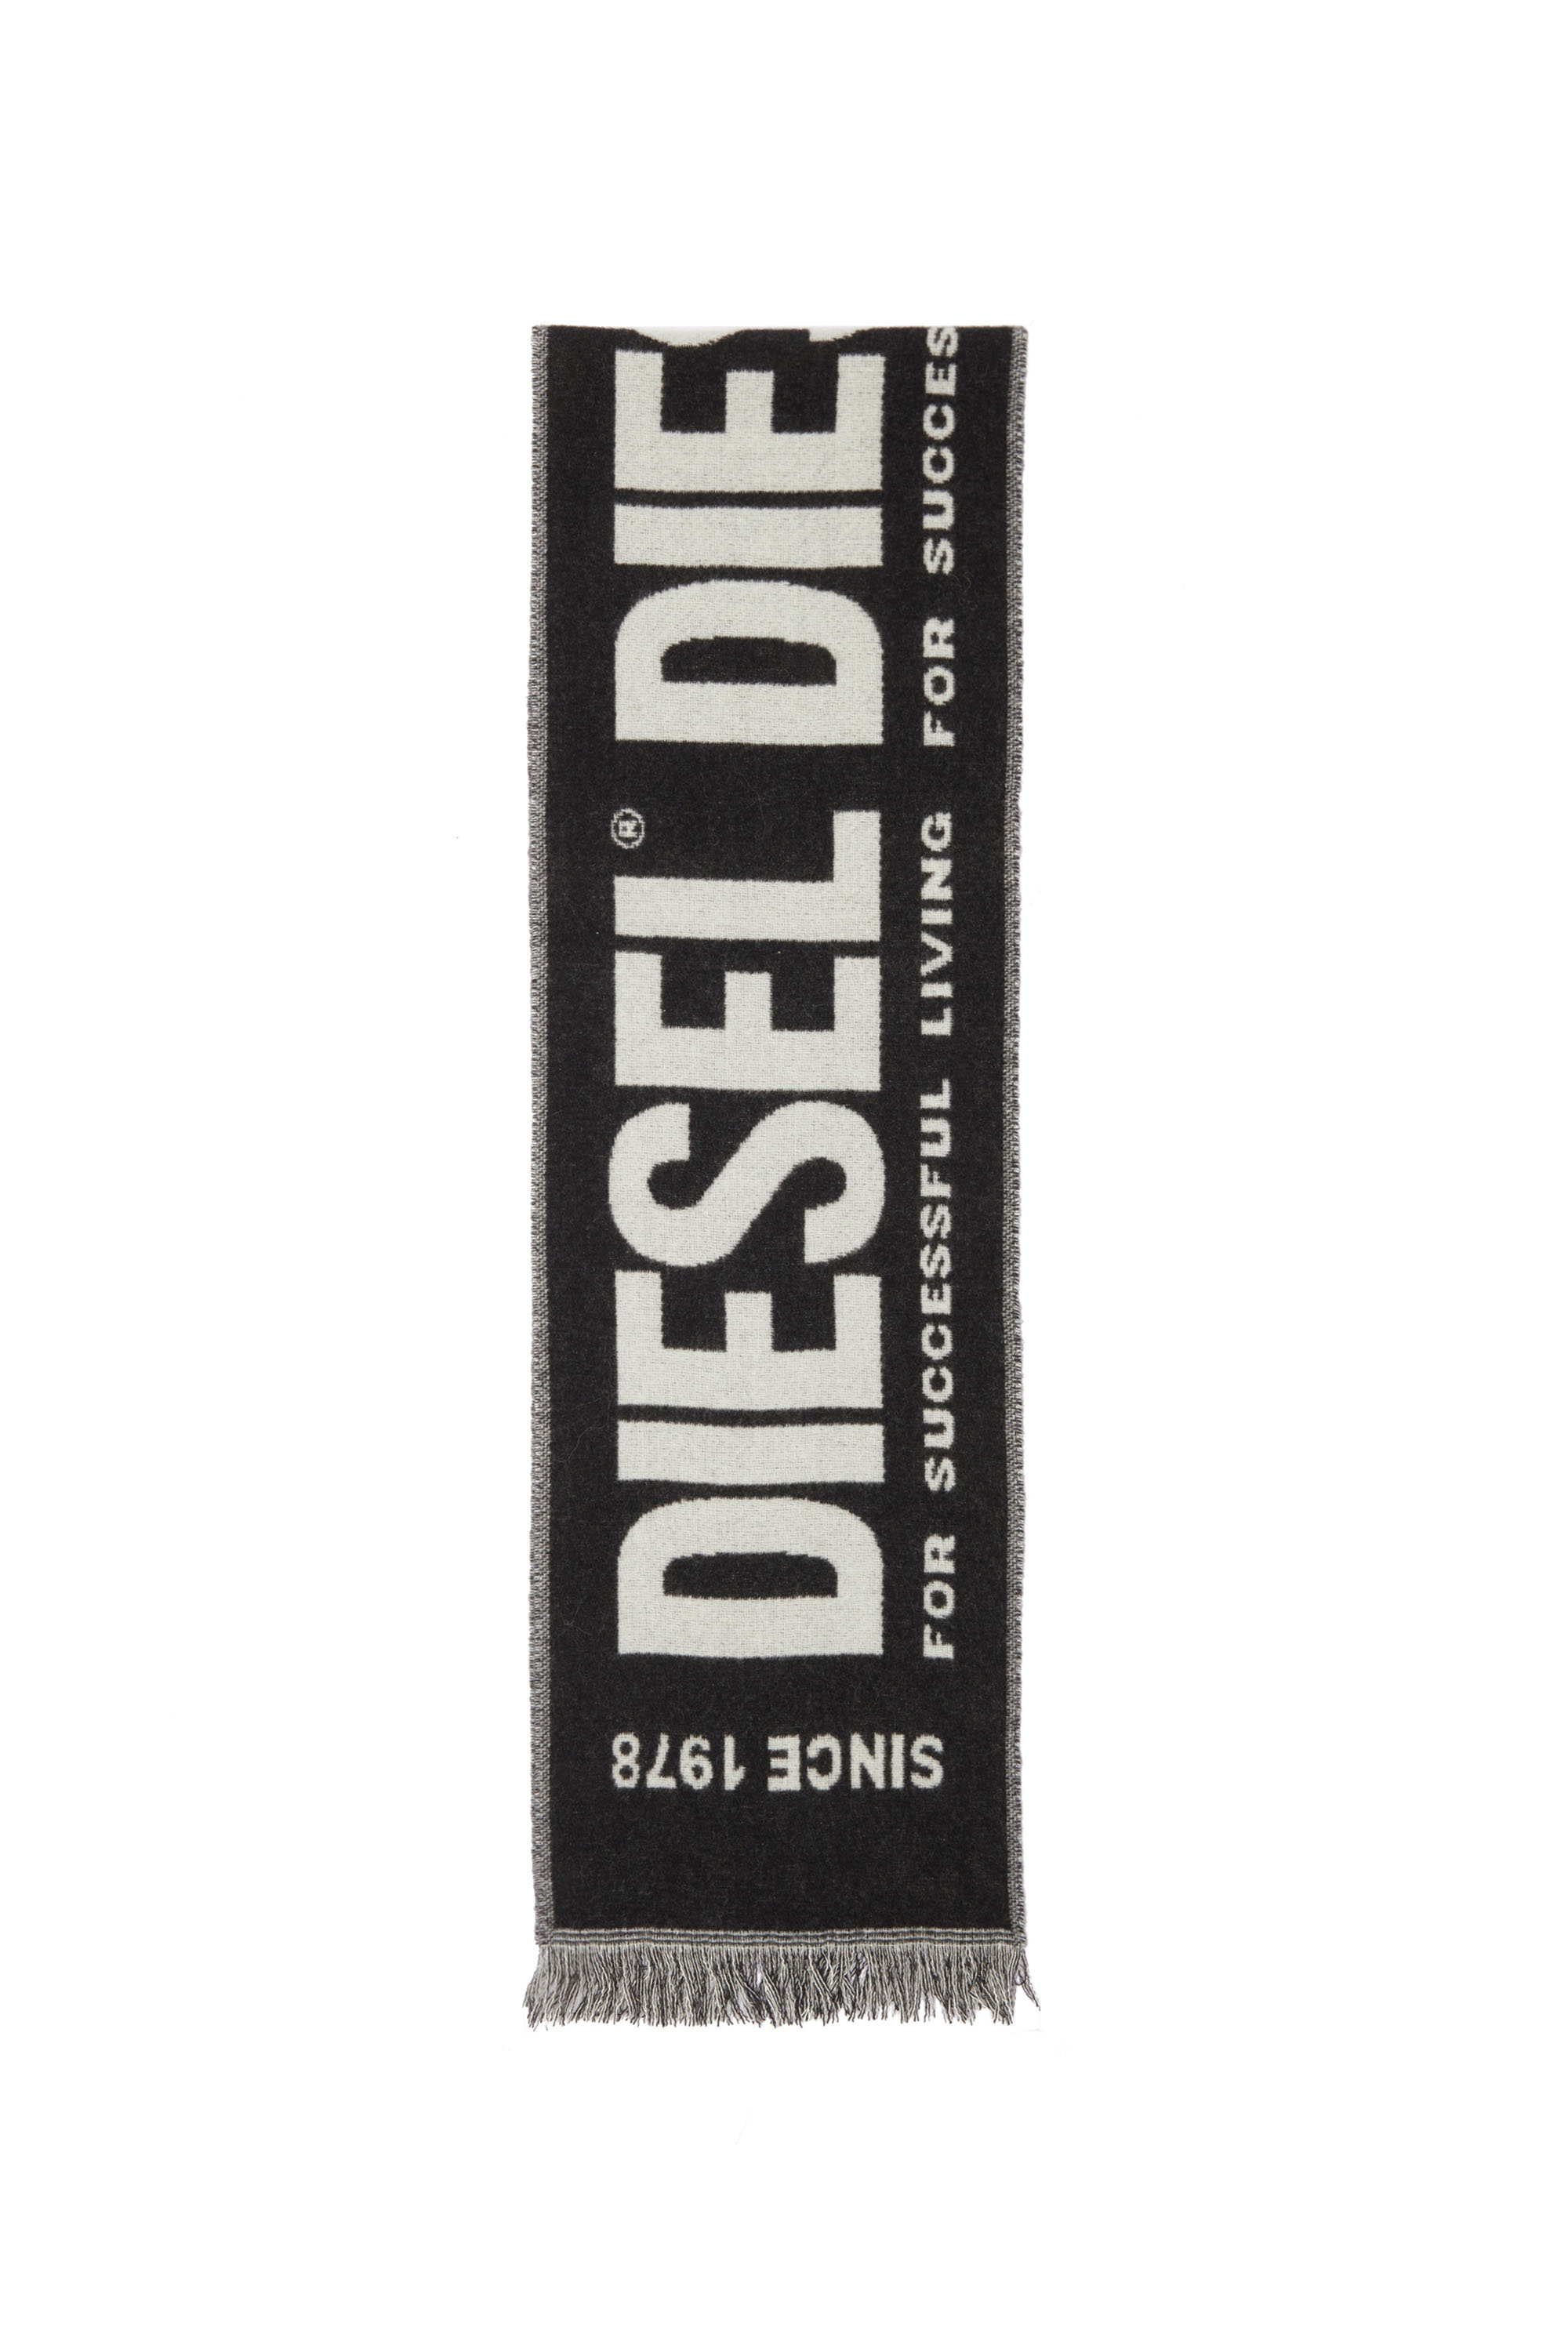 Diesel - S-BISC-NEW, Black - Image 3